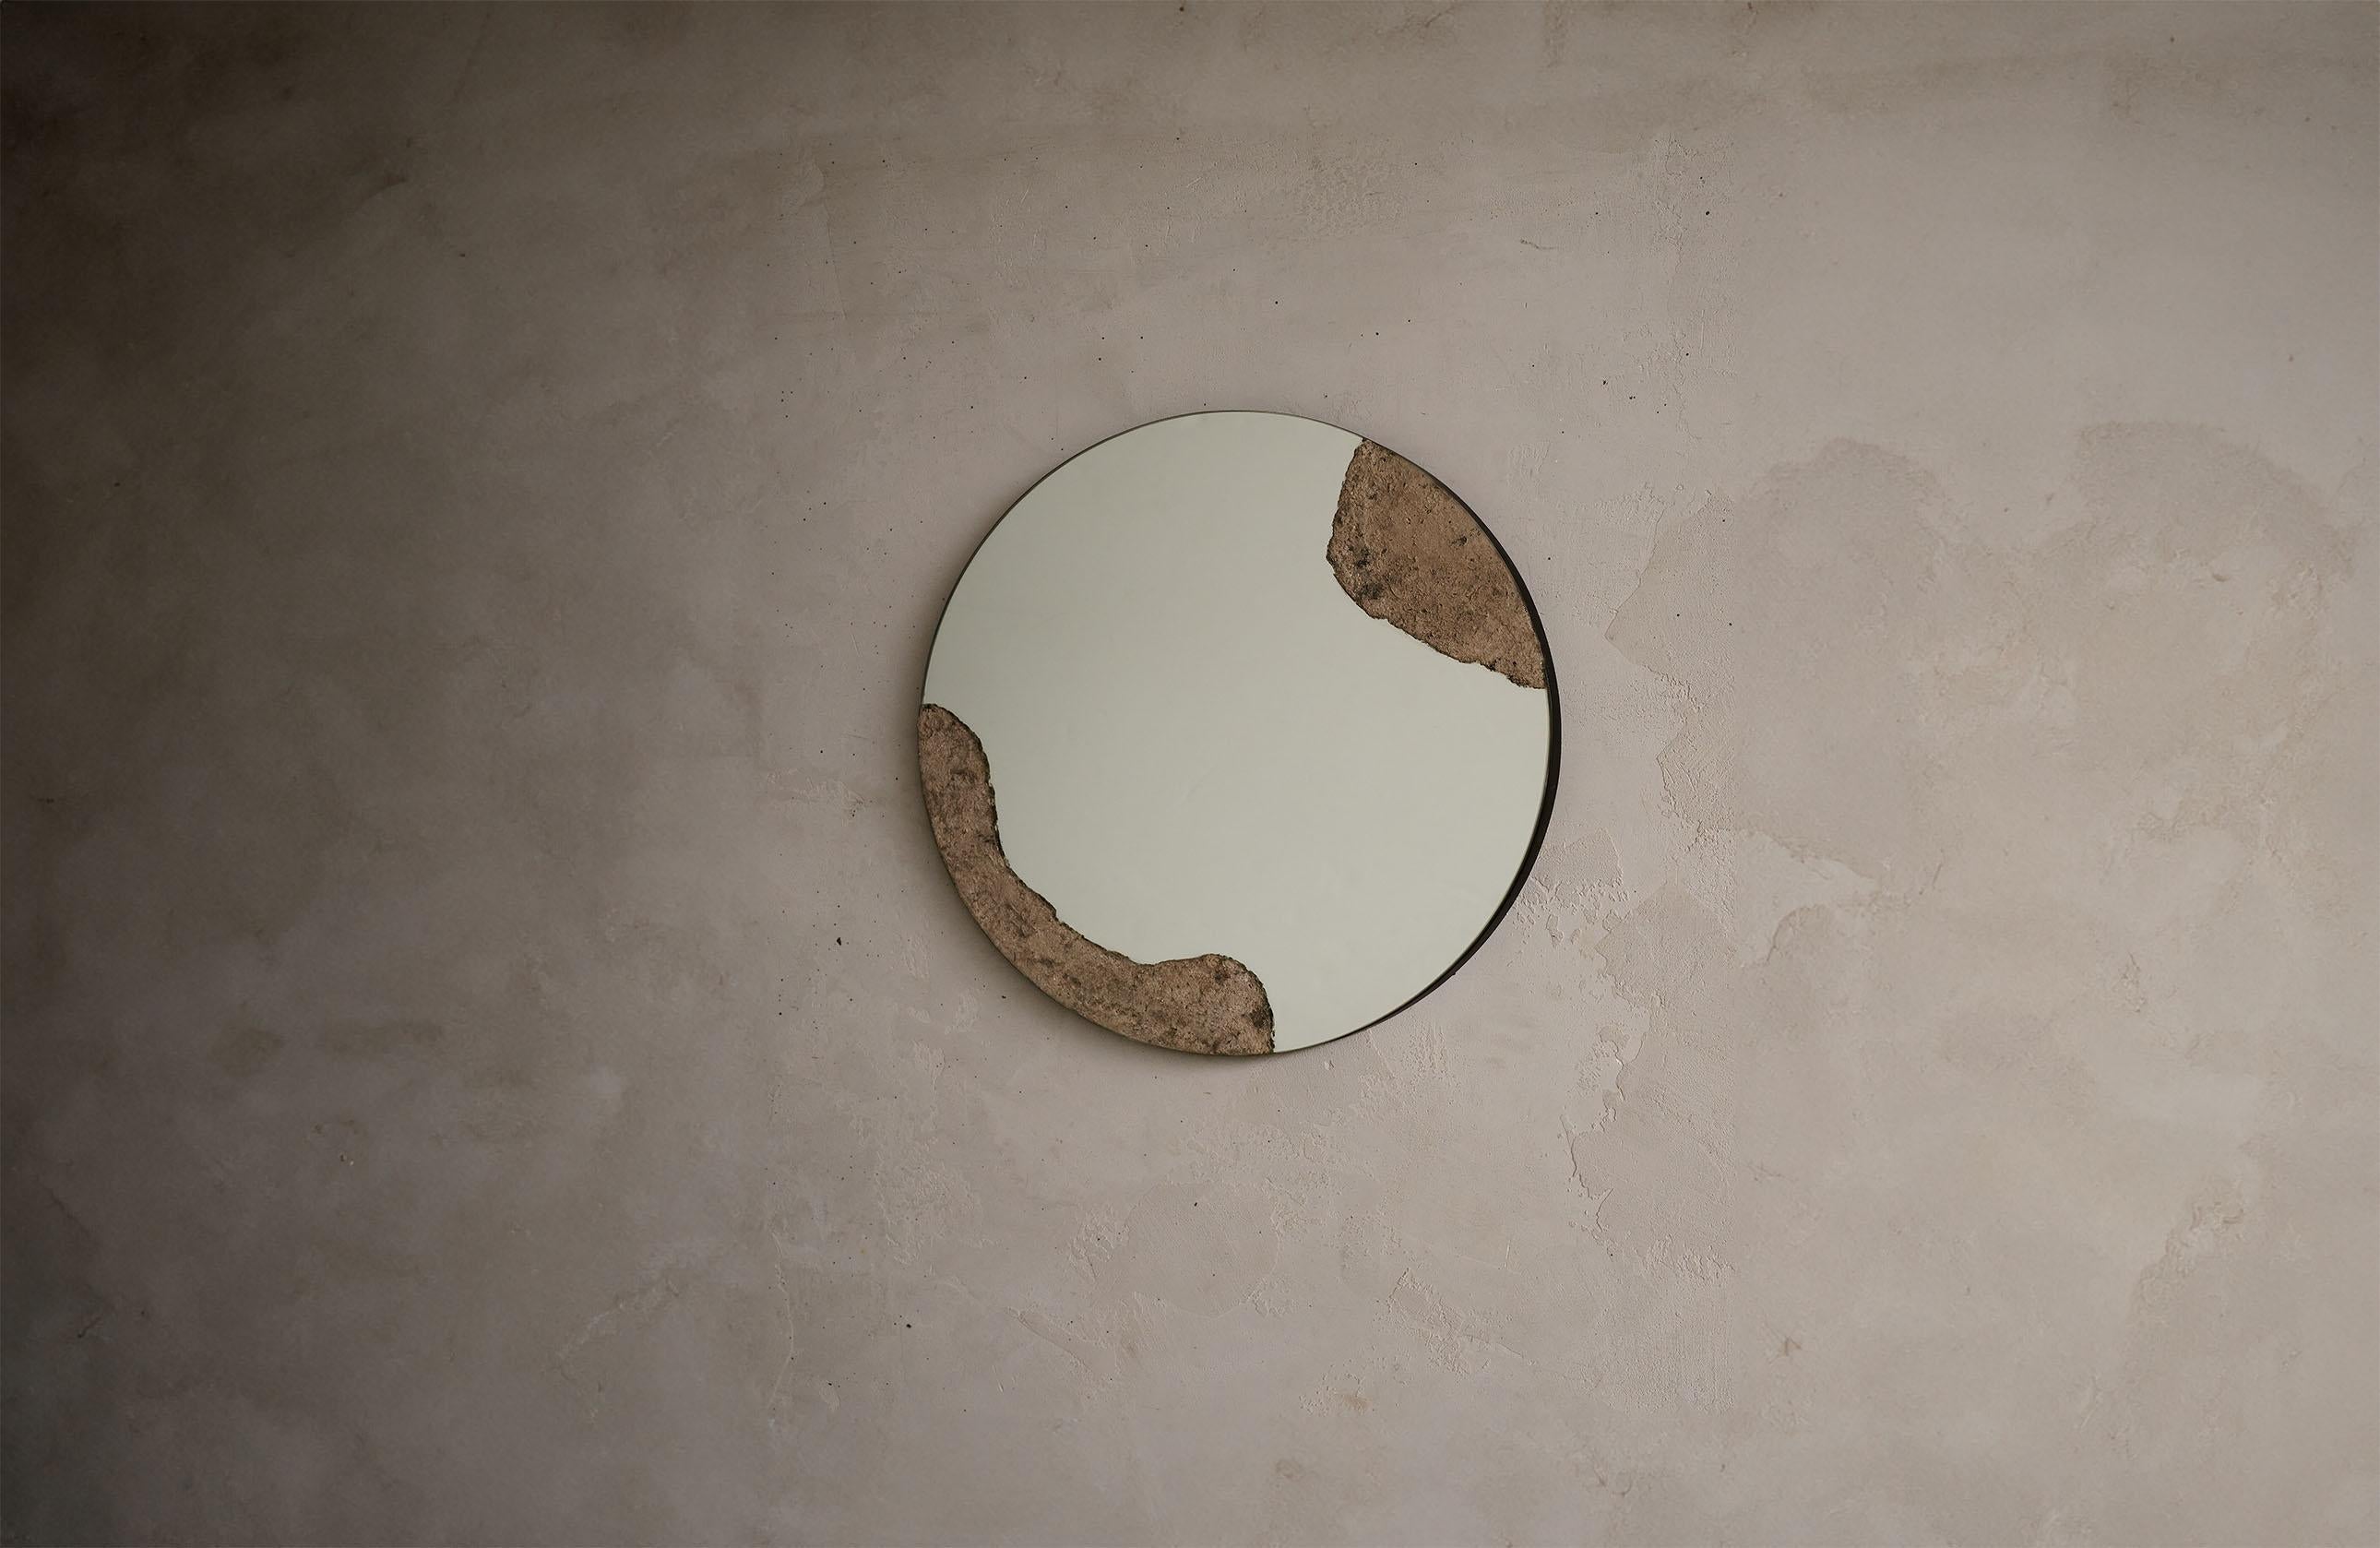 Le miroir rond Pompéi est composé de frêne brûlé, étalé et travaillé à la main.

*La forme et la couleur des cendres brûlées sont organiques et peuvent différer d'une pièce à l'autre afin de conserver le caractère unique de la main et de la